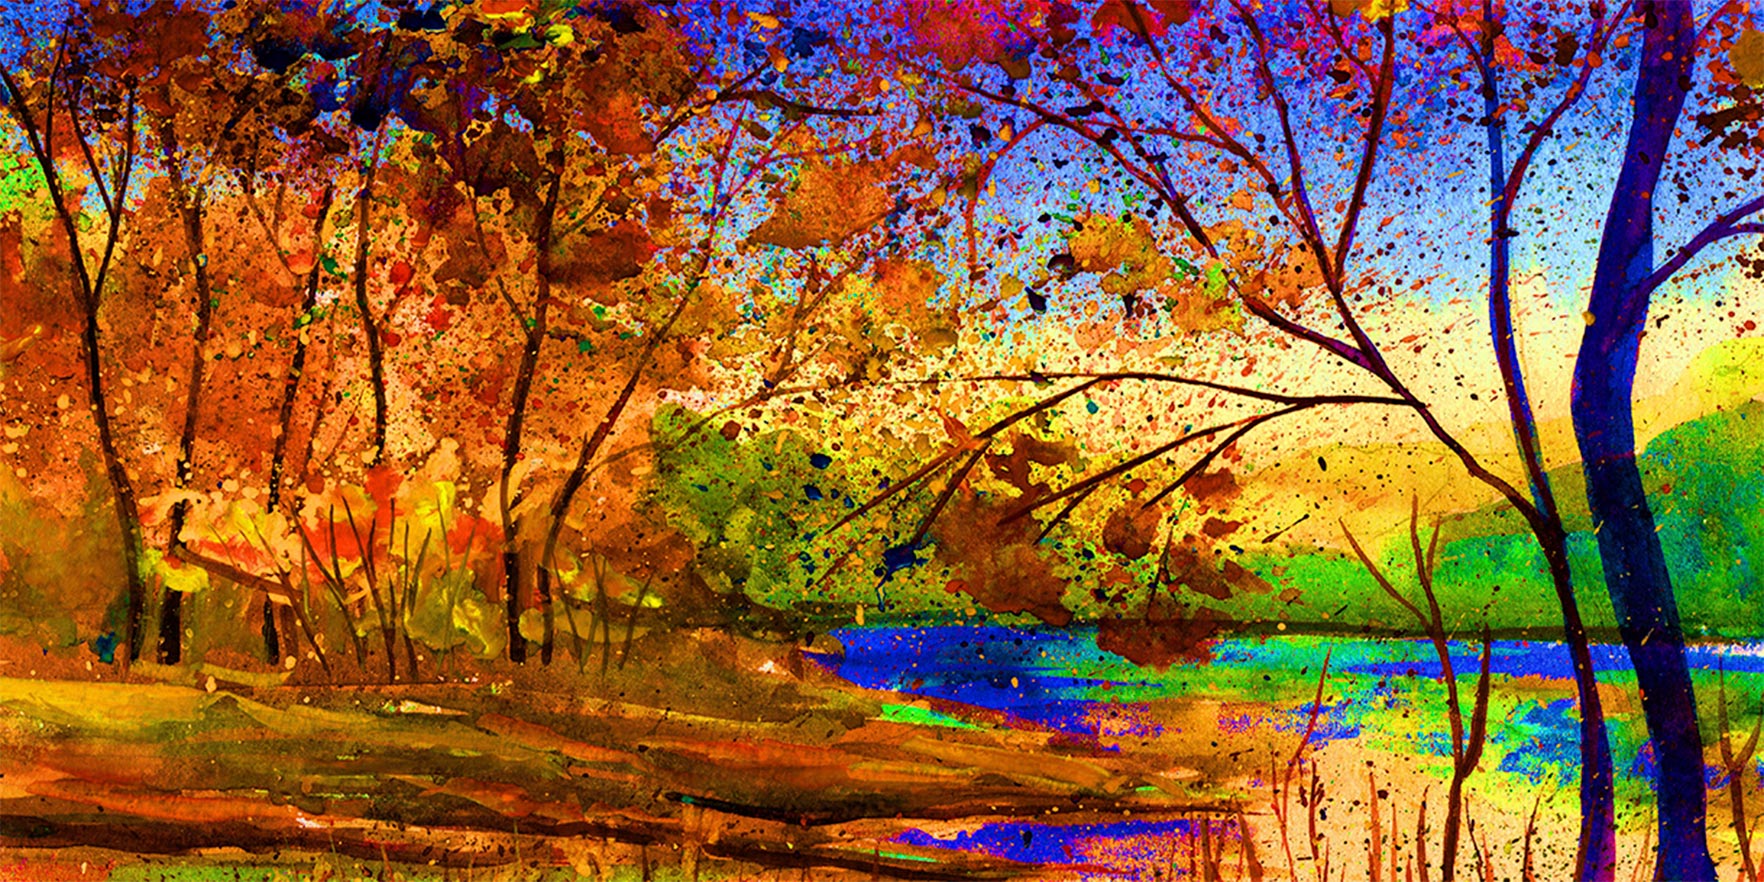 Quadro panorâmico - Paisagem de outono em aquarela